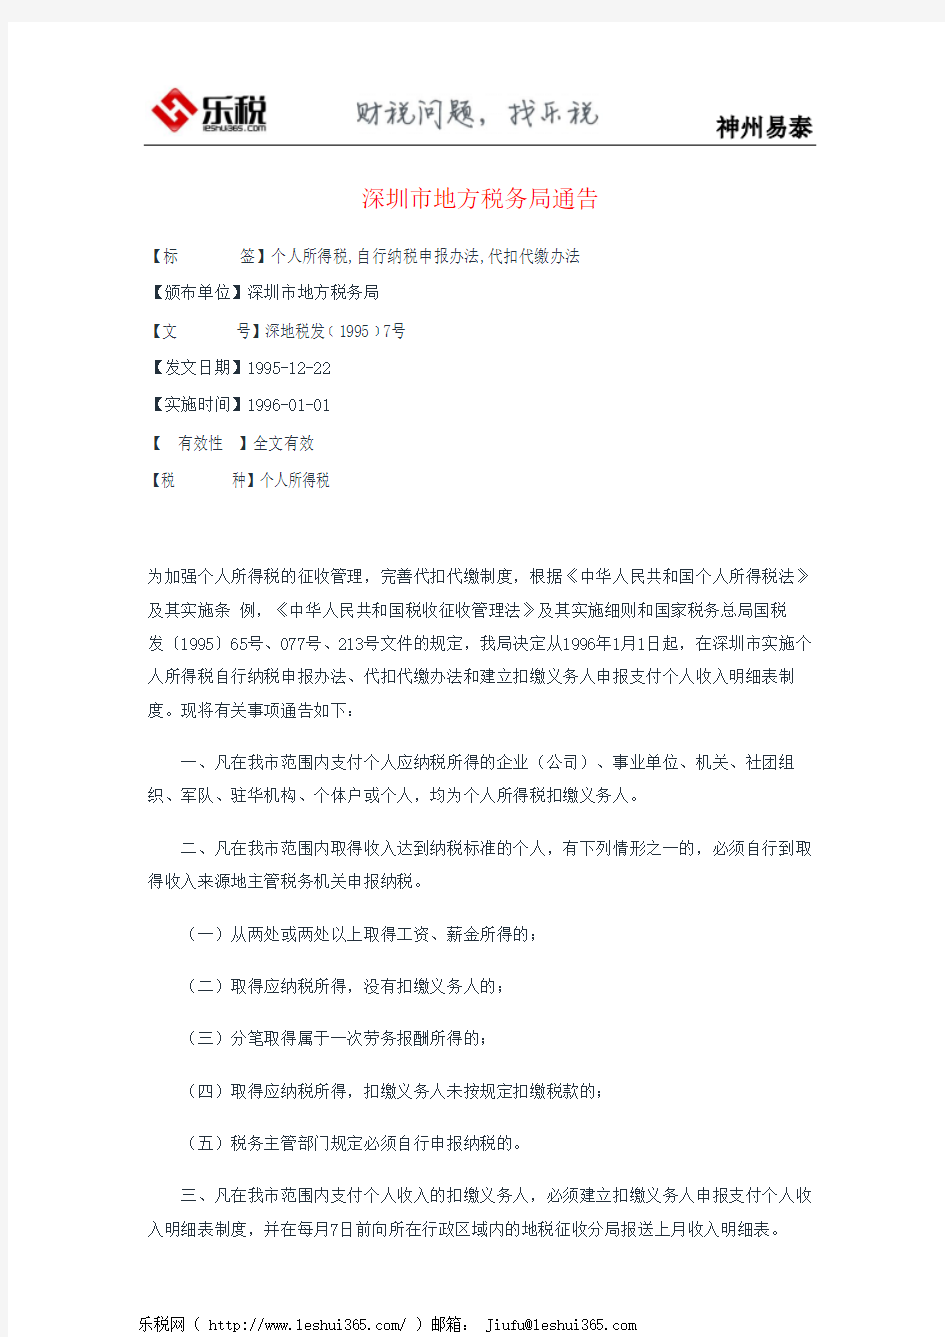 深圳市地方税务局通告